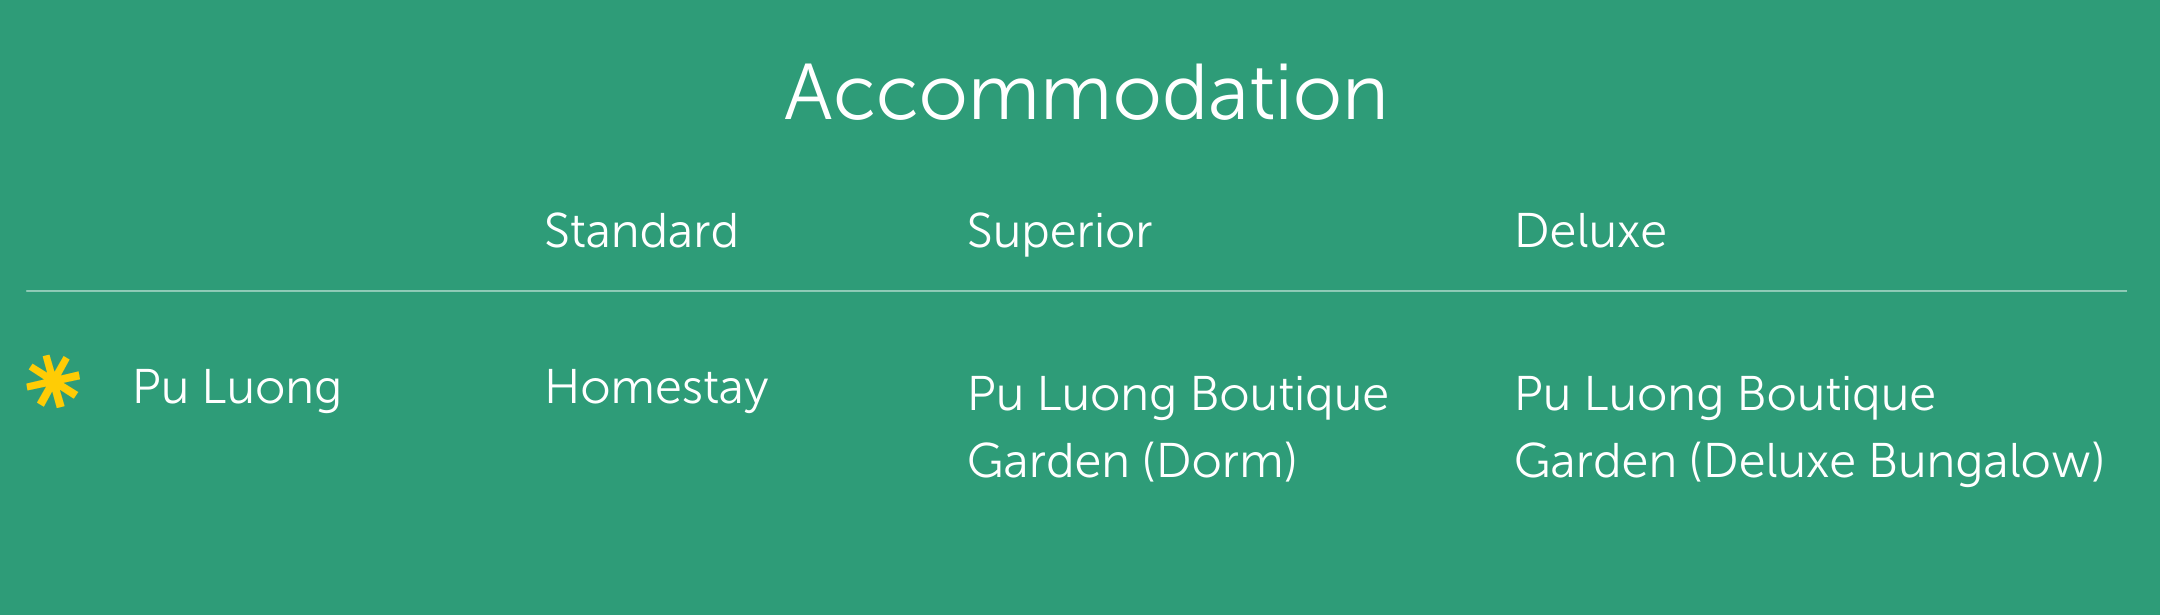 Pu Luong tour accommodation (1)